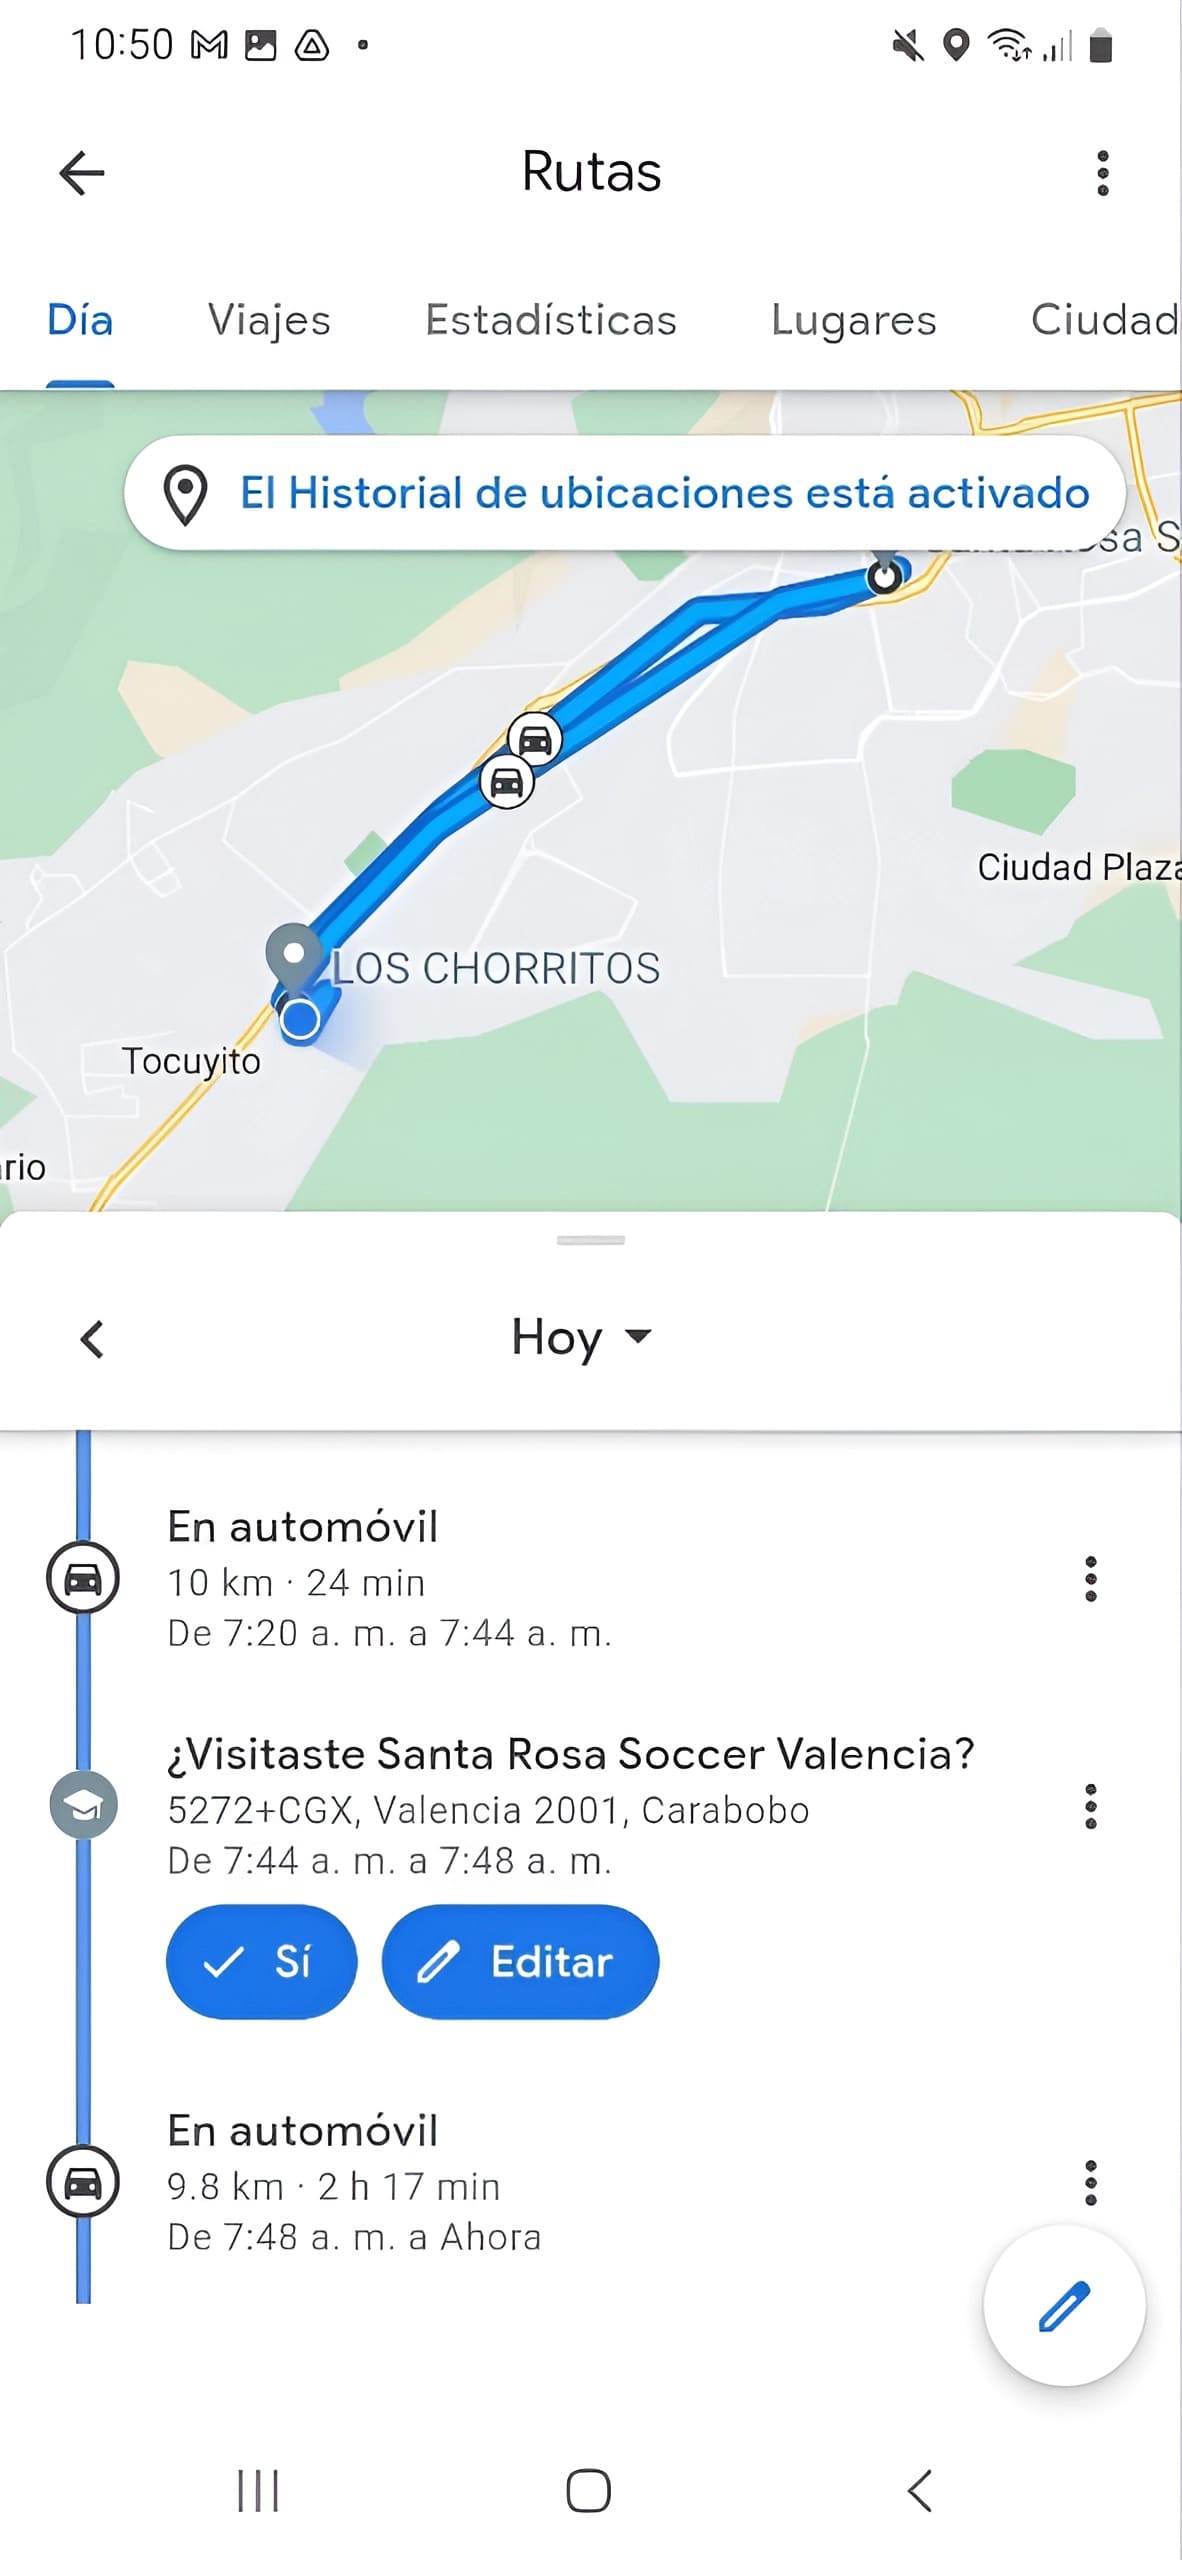 Una imagen del teléfono de seguimiento utilizando Google Maps con la ayuda de la cronología